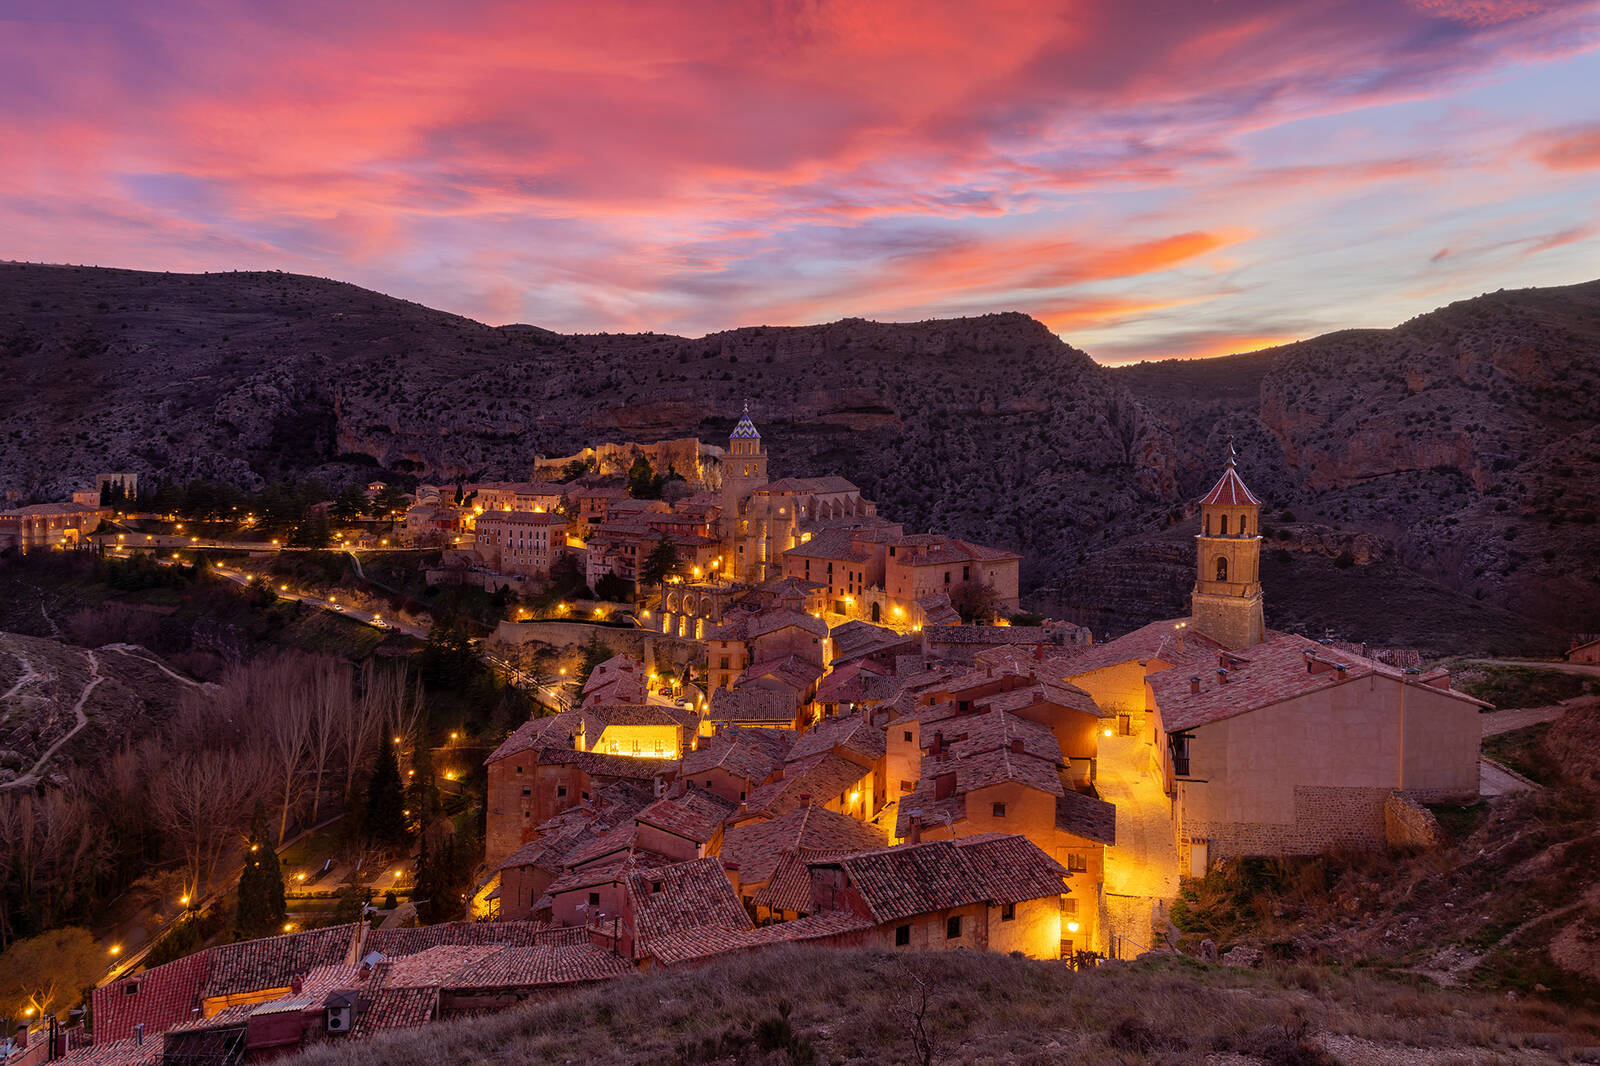 Image of Albarracin by Adelheid Smitt